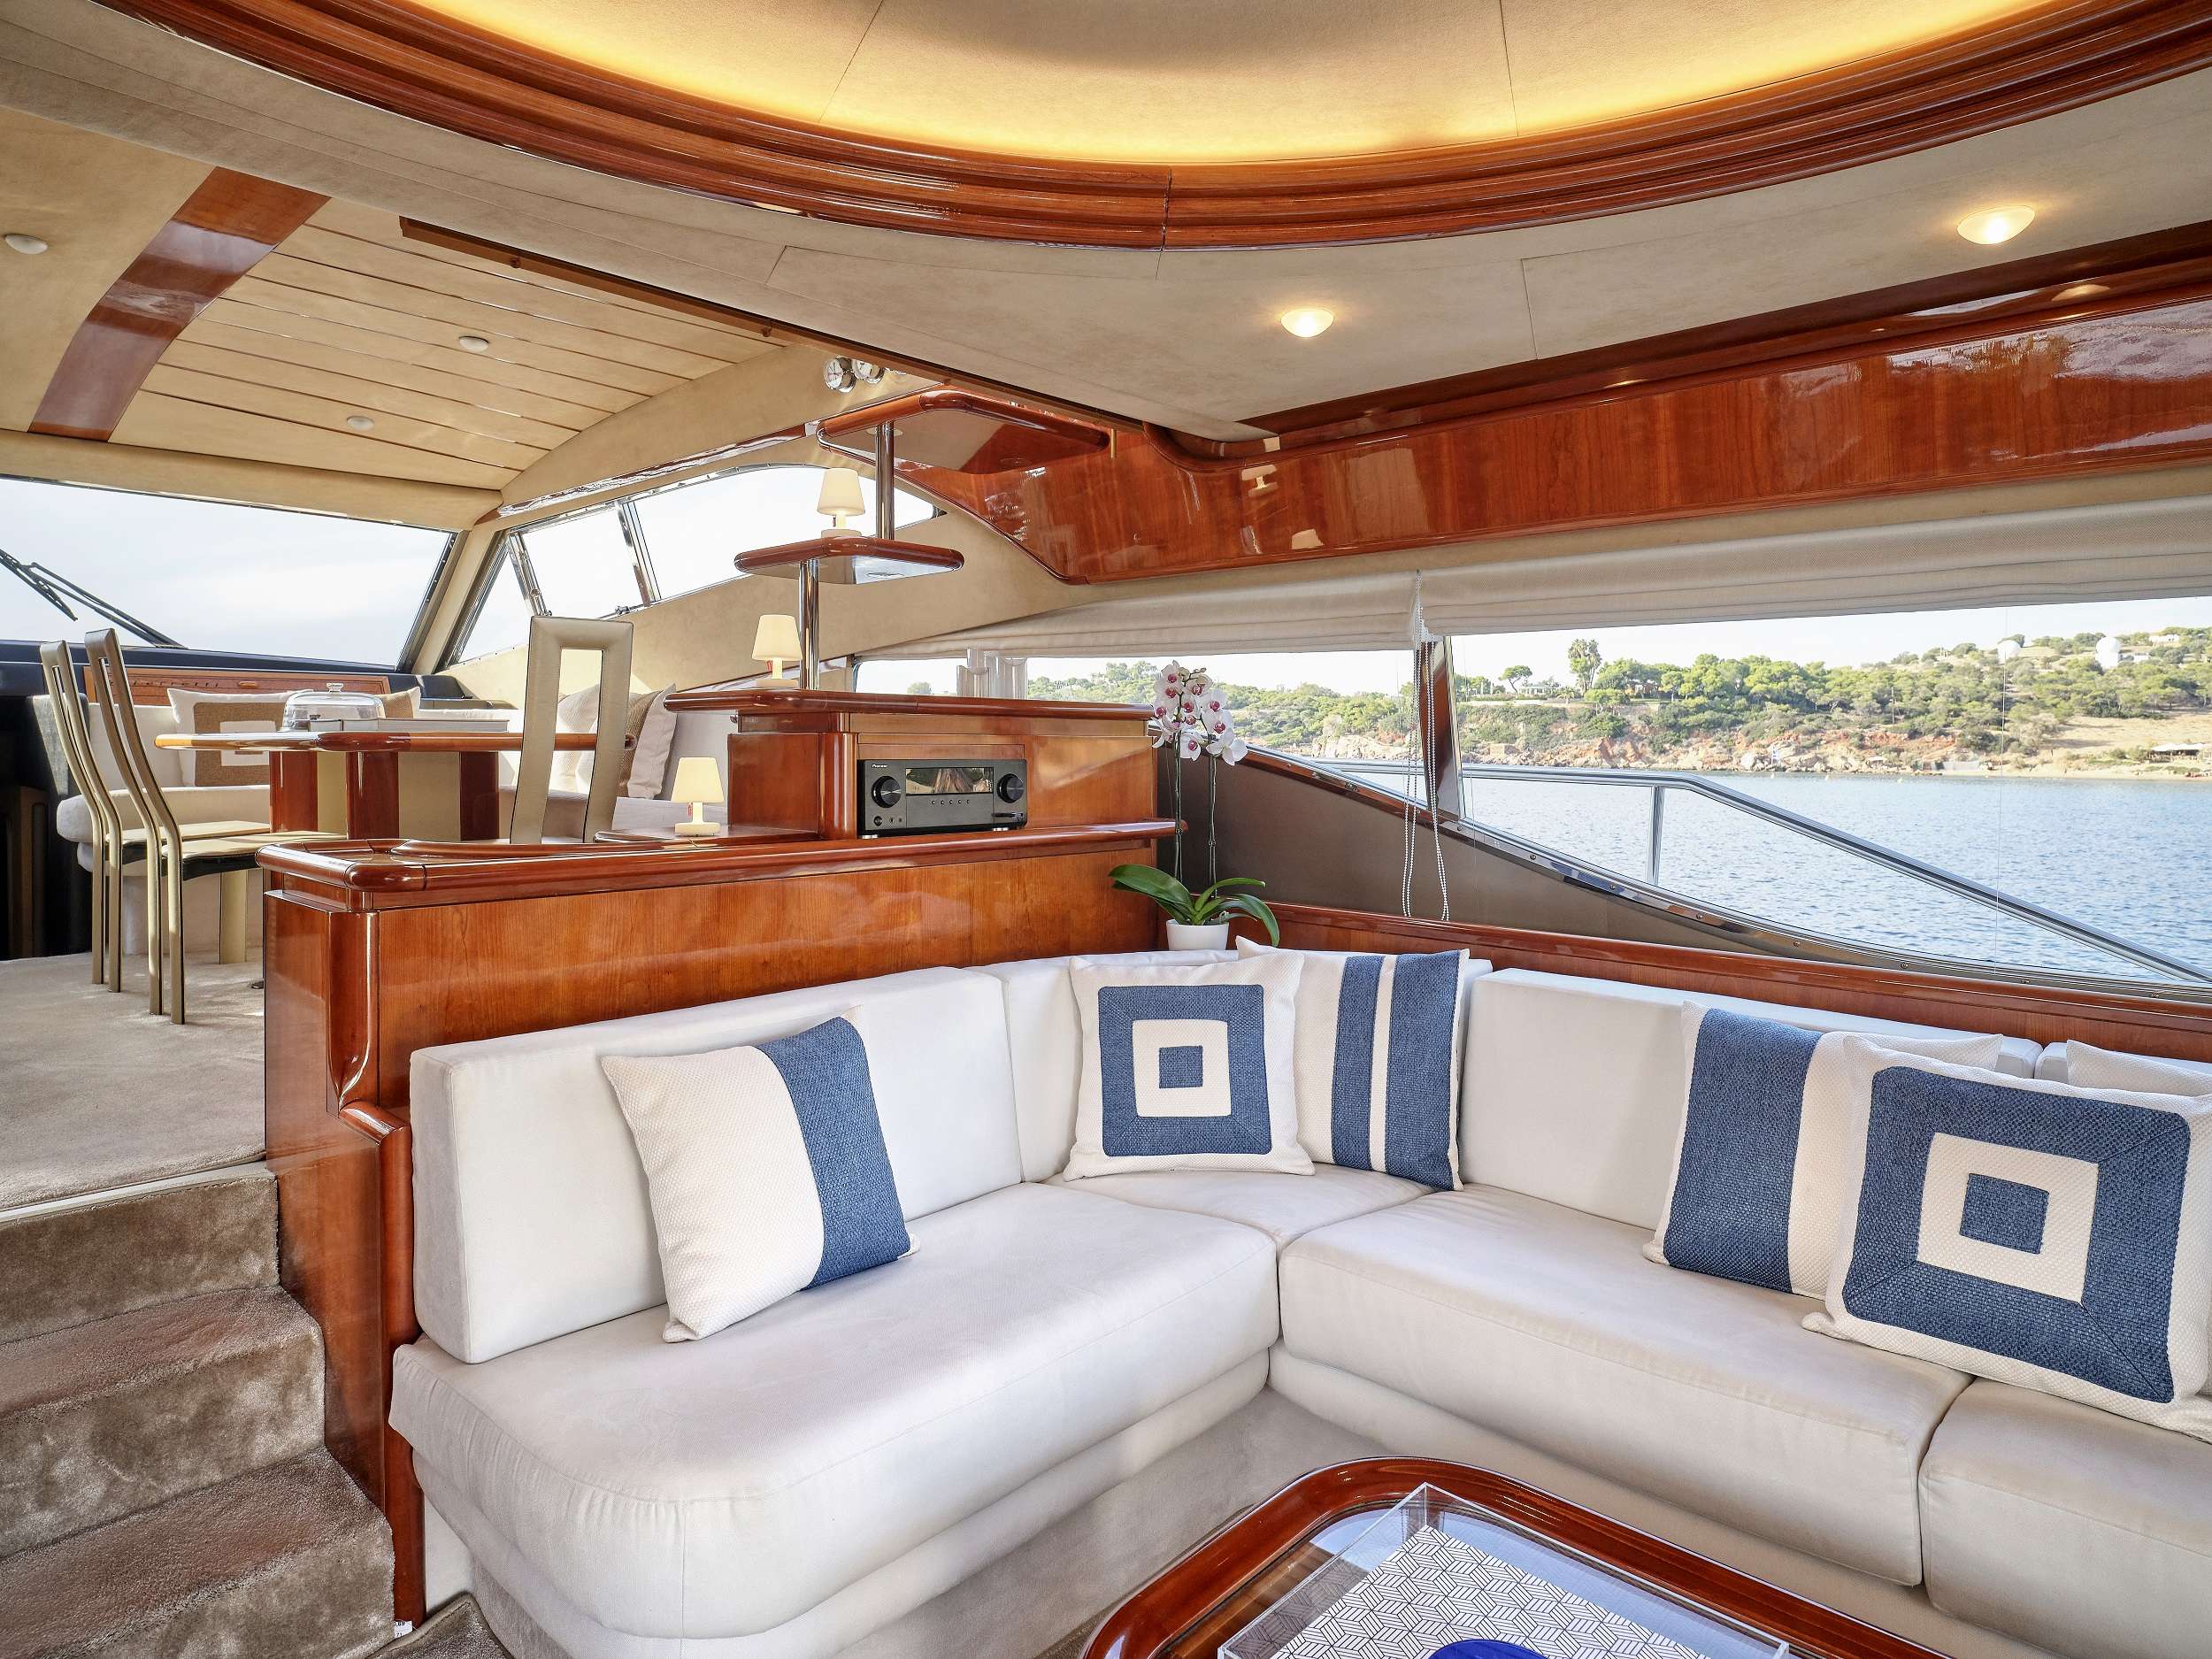 MIREN Yacht Charter - Salon sofa